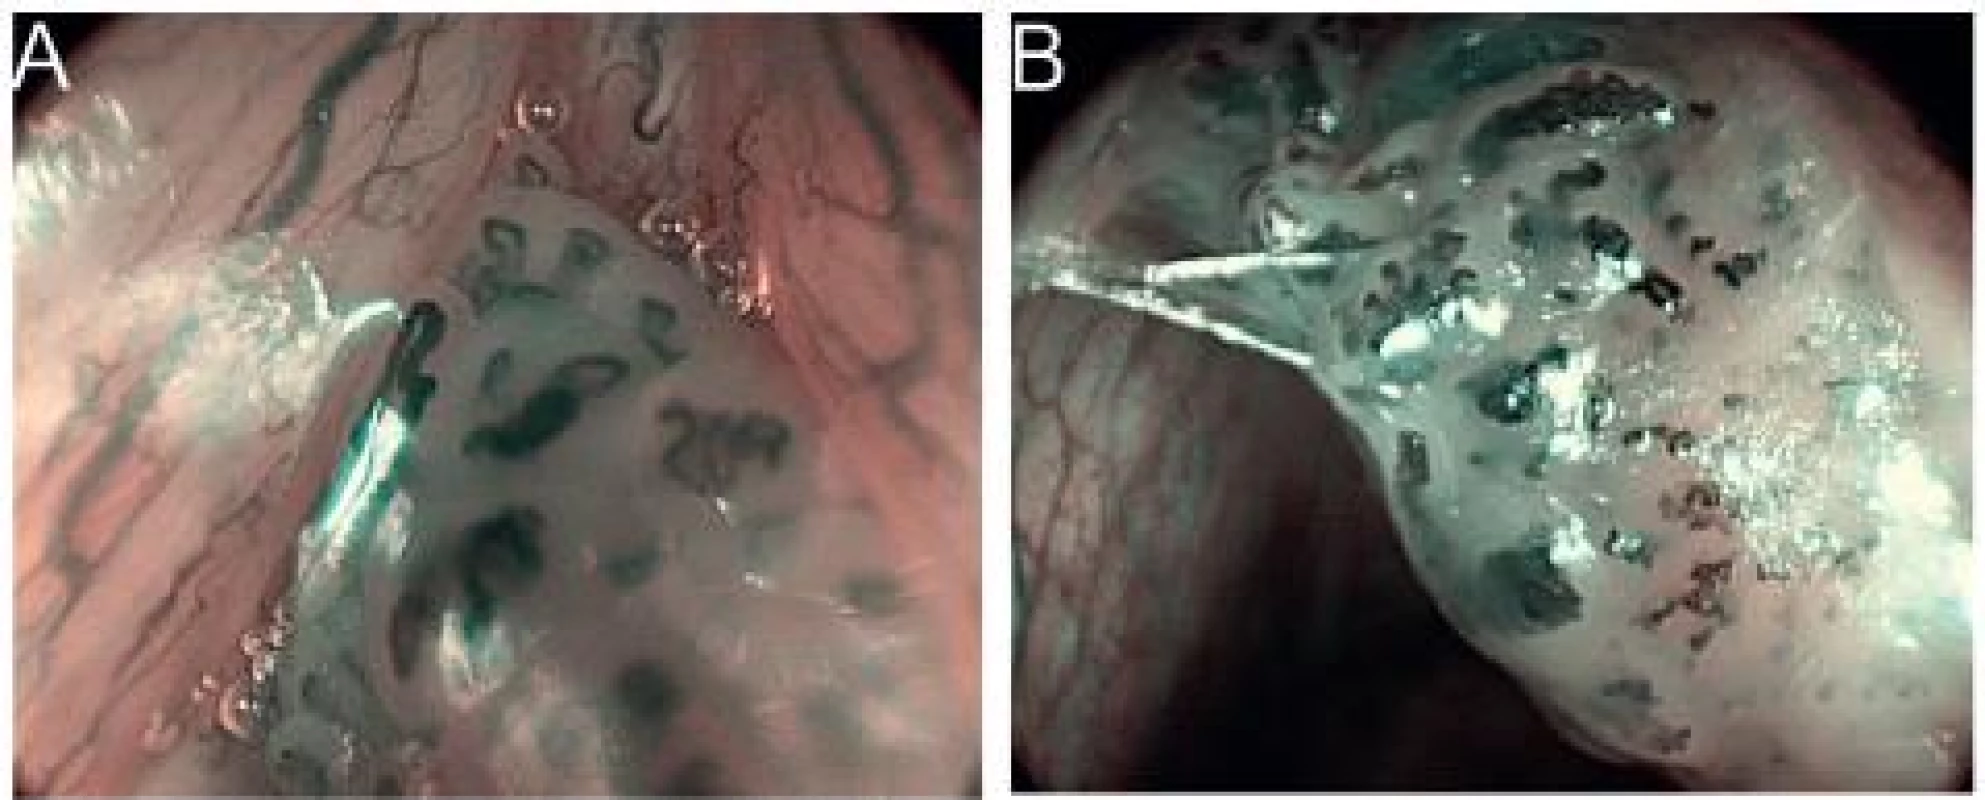 Papilom hlasivky, HDTV NBI zvětšovací endoskopie (A, B). Patrné jsou mnohočetné pravidelné papily, kryté dlaždicovým epitelem, s centrální kapilární kličkou, které jsou typické pro papilomy.